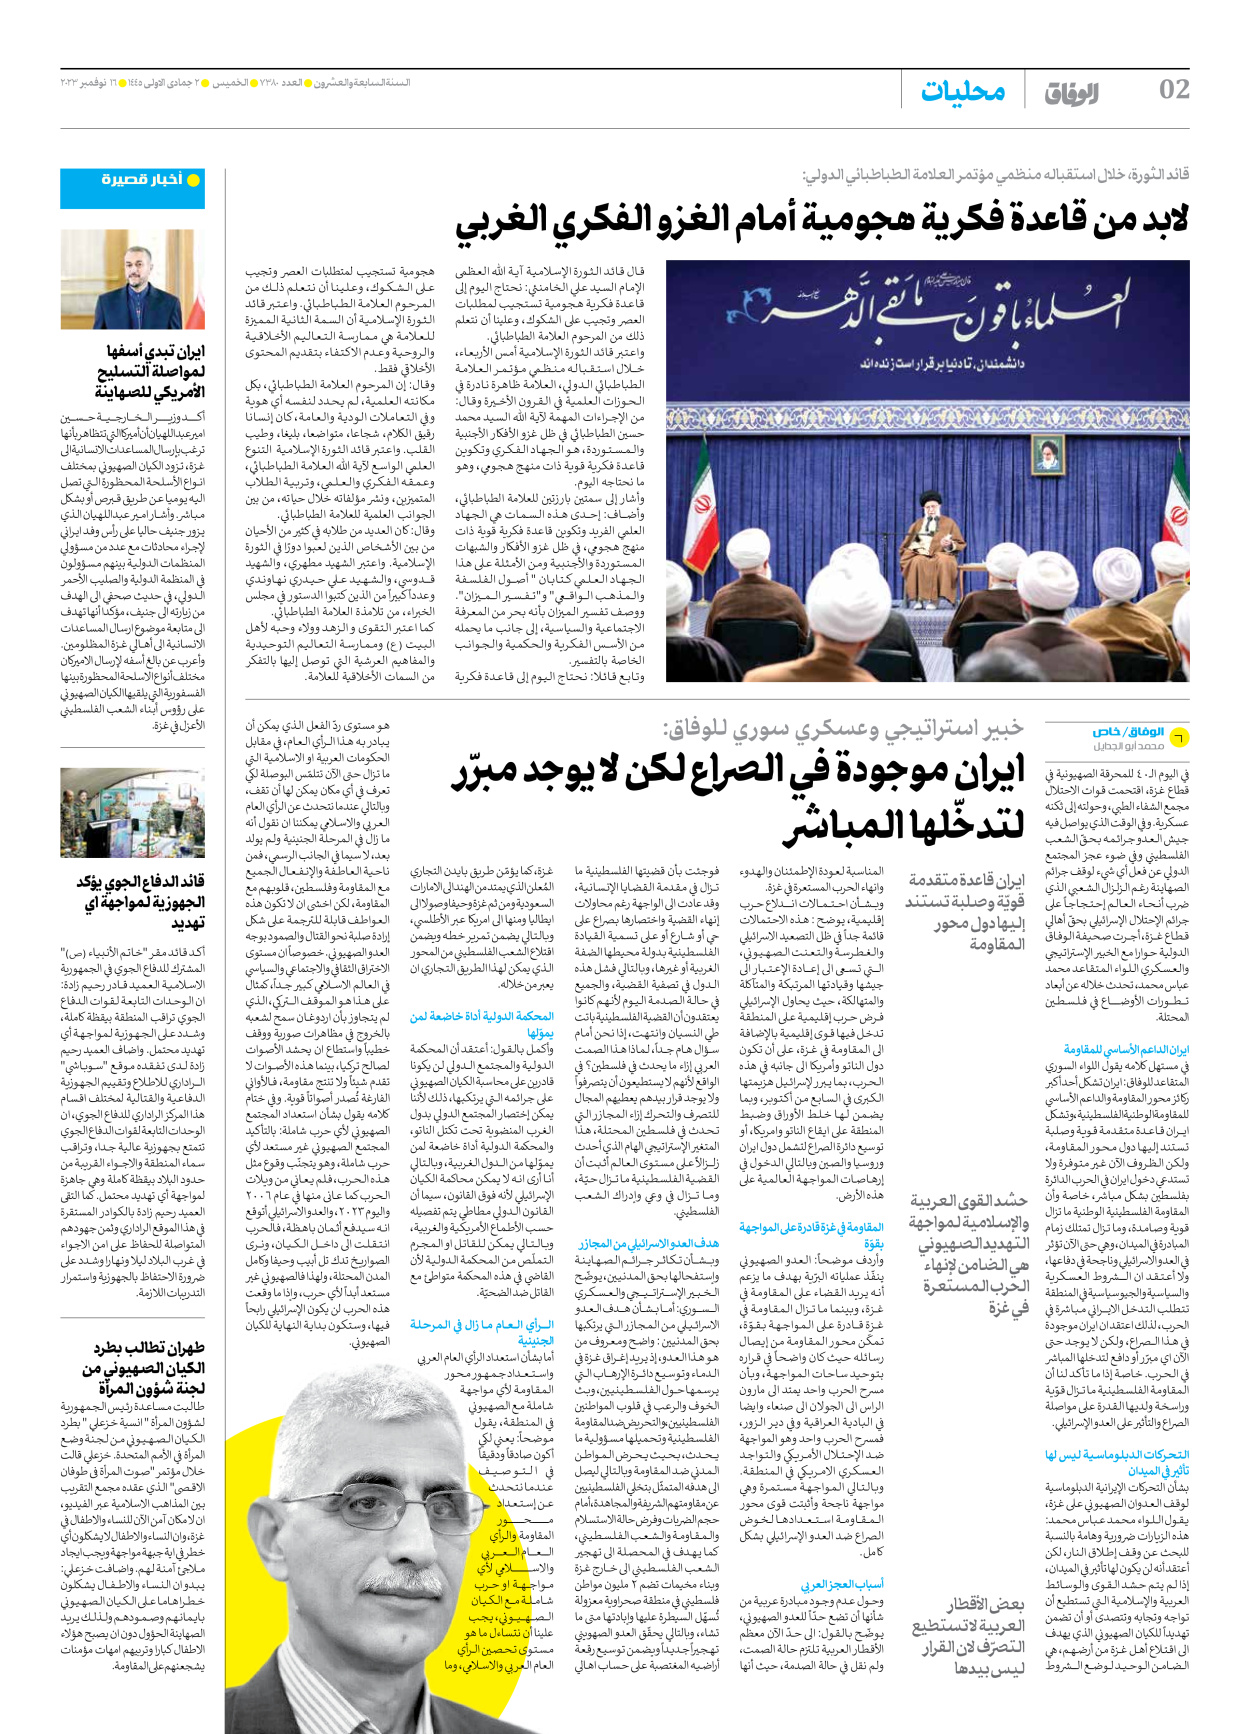 صحیفة ایران الدولیة الوفاق - العدد سبعة آلاف وثلاثمائة وثمانون - ١٦ نوفمبر ٢٠٢٣ - الصفحة ۲